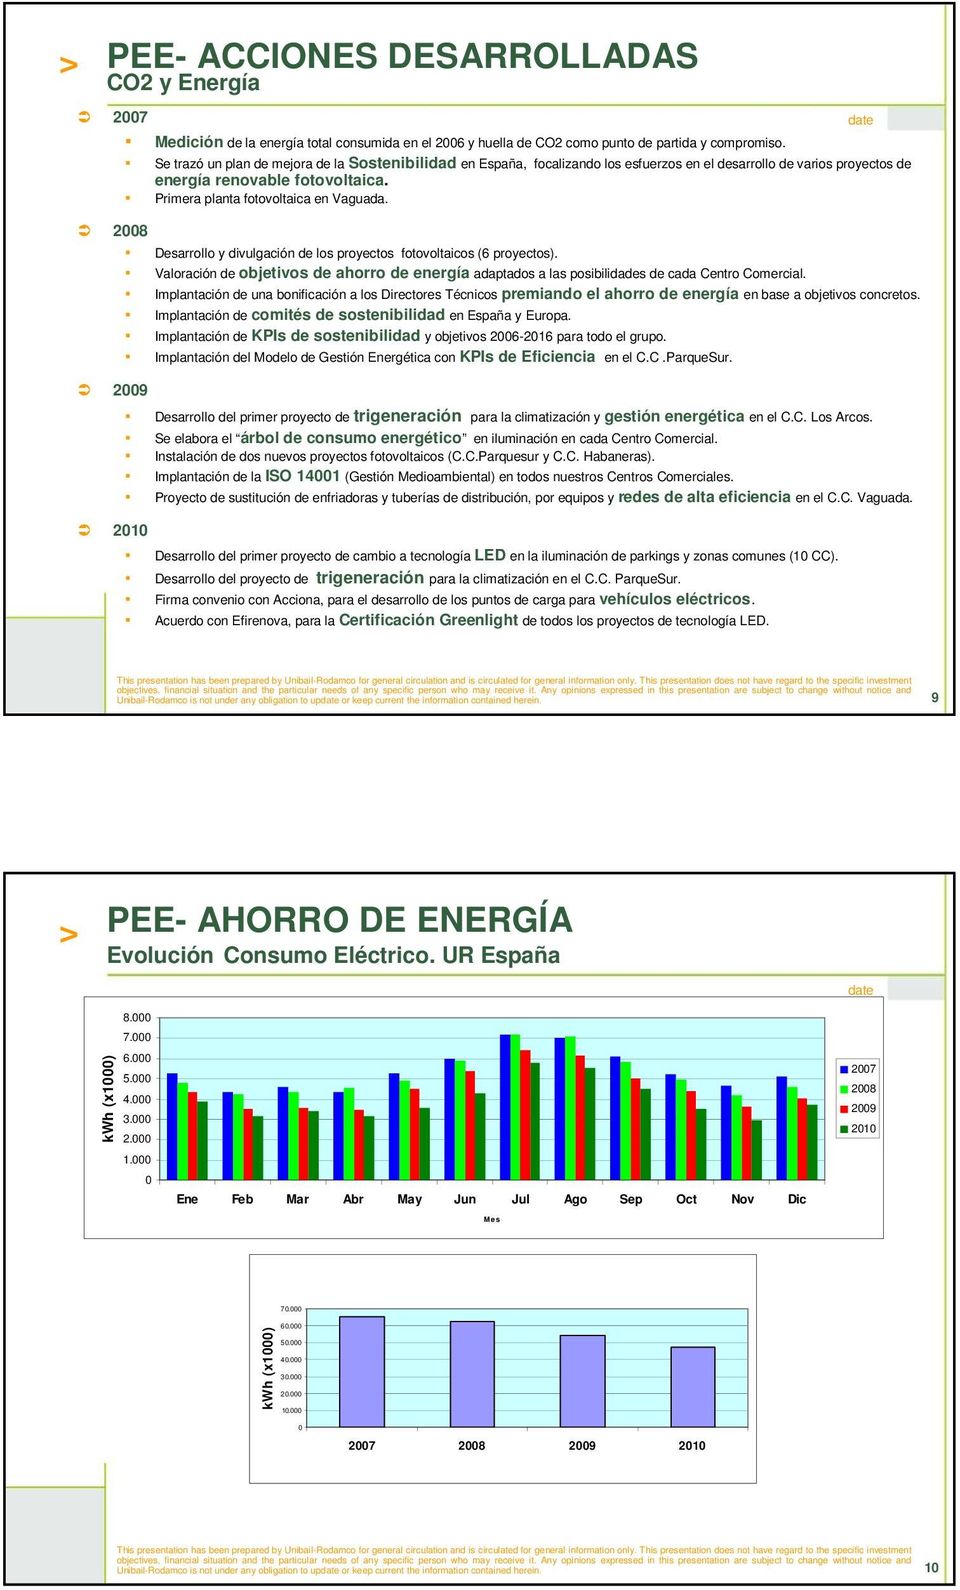 2008 Desarrollo y divulgación de los proyectos fotovoltaicos (6 proyectos). Valoración de objetivos de ahorro de energía adaptados a las posibilidades de cada Centro Comercial.